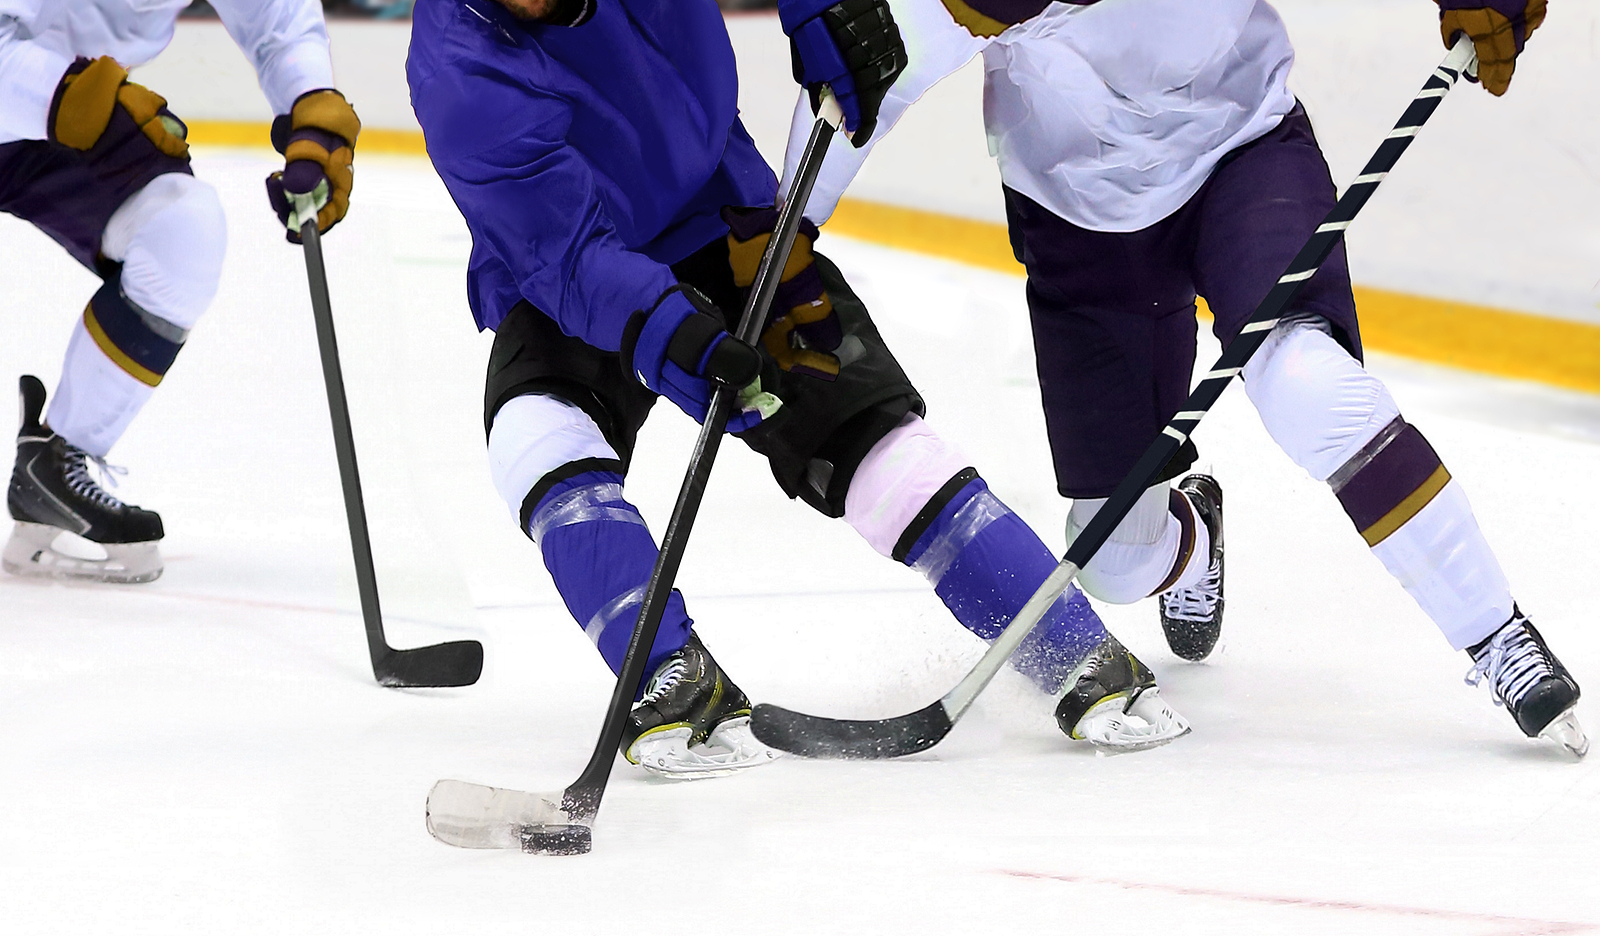 IIHF prevzame Belorusijo, ki bo gostiteljica svetovnega prvenstva v hokeju na ledu 2021